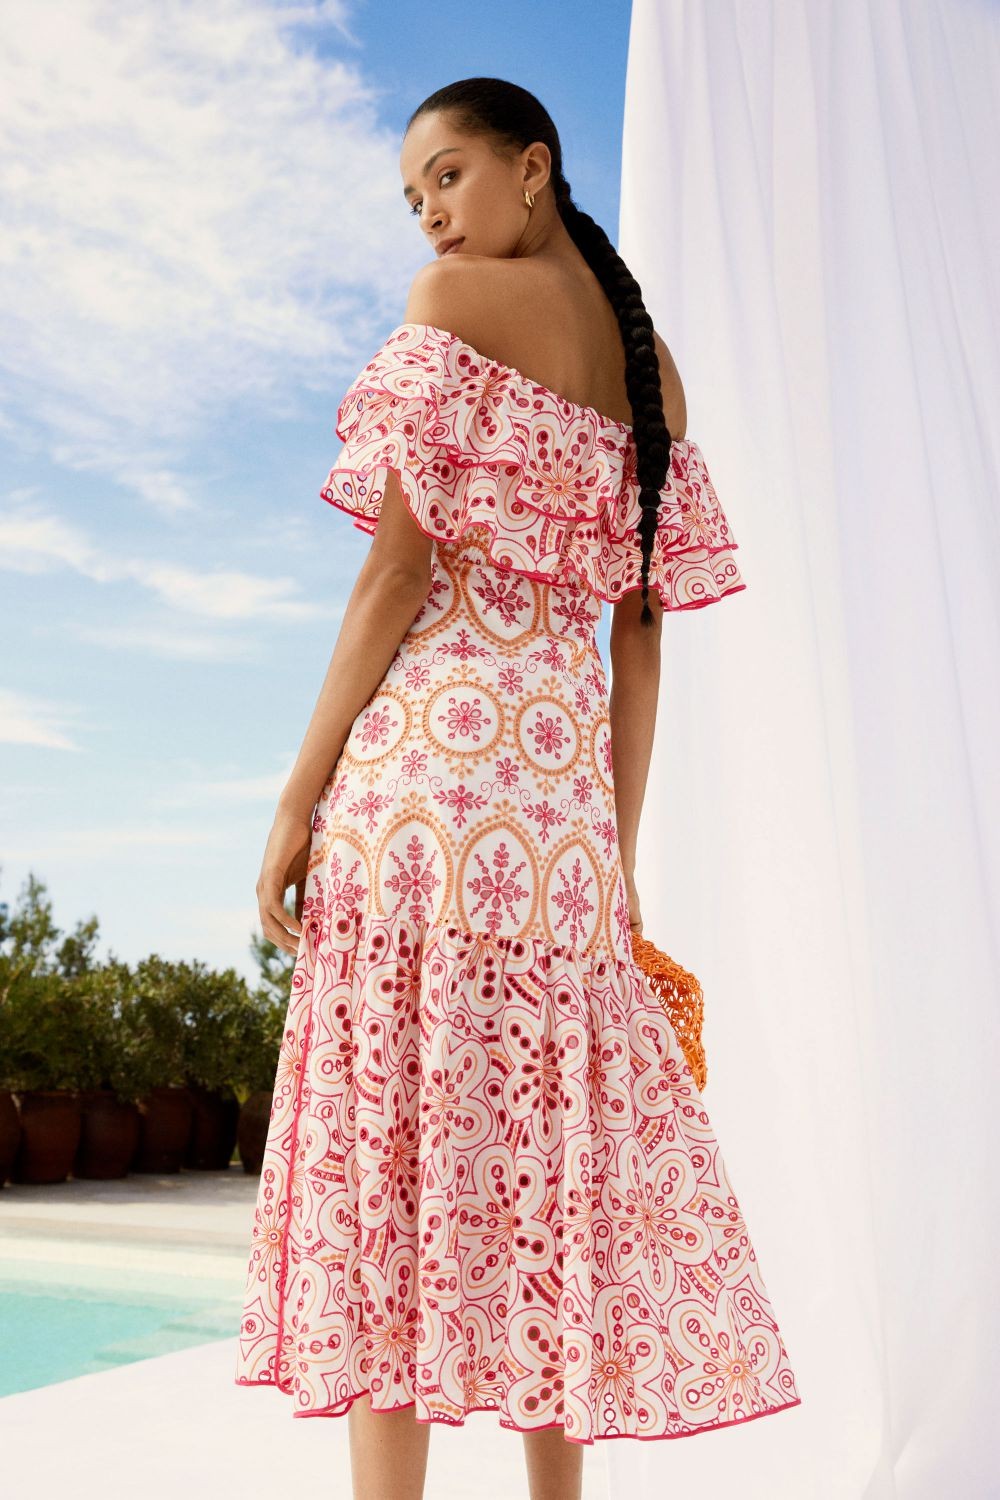 Charo Ruiz Isabella Long Dress - Premium Dresses from Marina St Barth - Just $845.00! Shop now at Marina St Barth